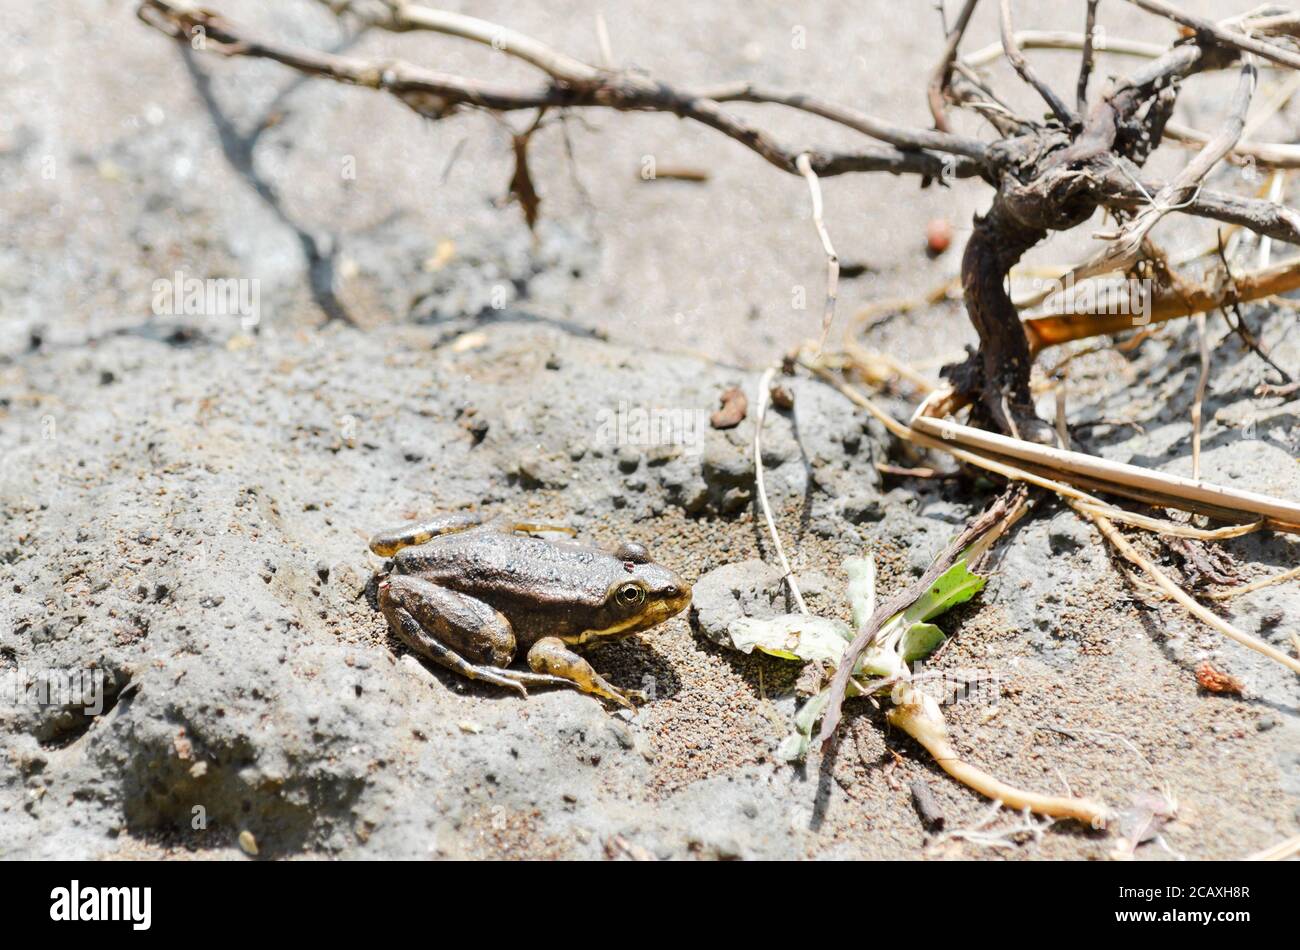 Una piccola rana giallo-marrone si siede sulla sabbia bagnata in una giornata di sole. Fuoco elettorale Foto Stock